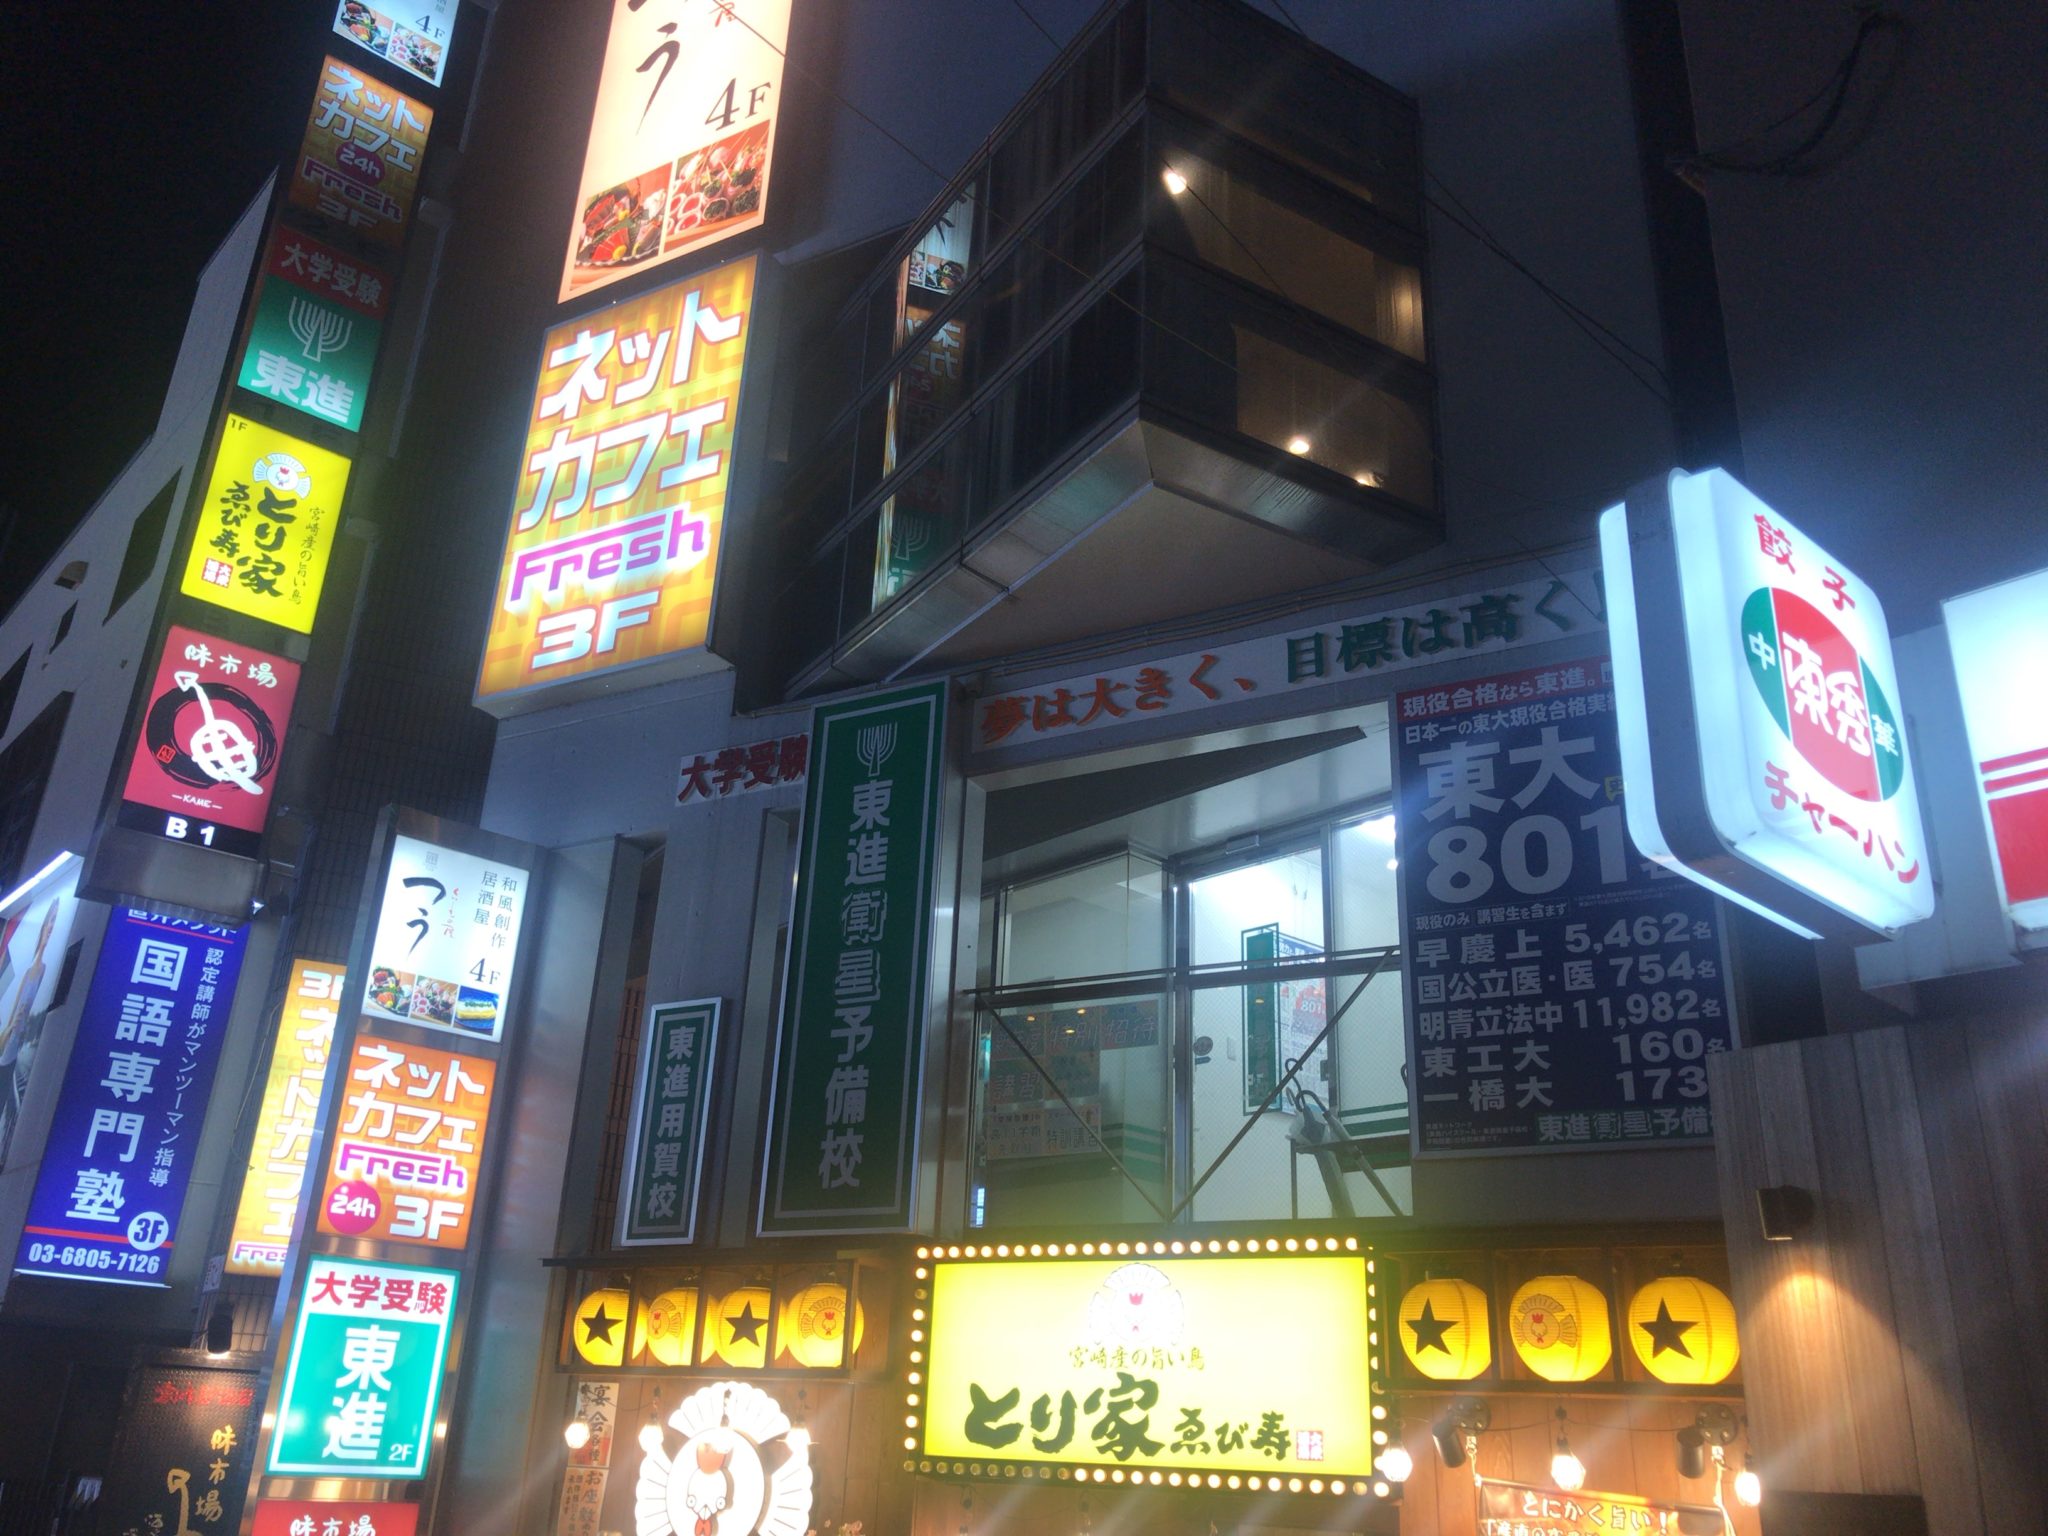 桜新町駅から徒歩13分 フレッシュ 用賀店をレポート 日本全国のネカフェ 漫画喫茶マップのヒマップ